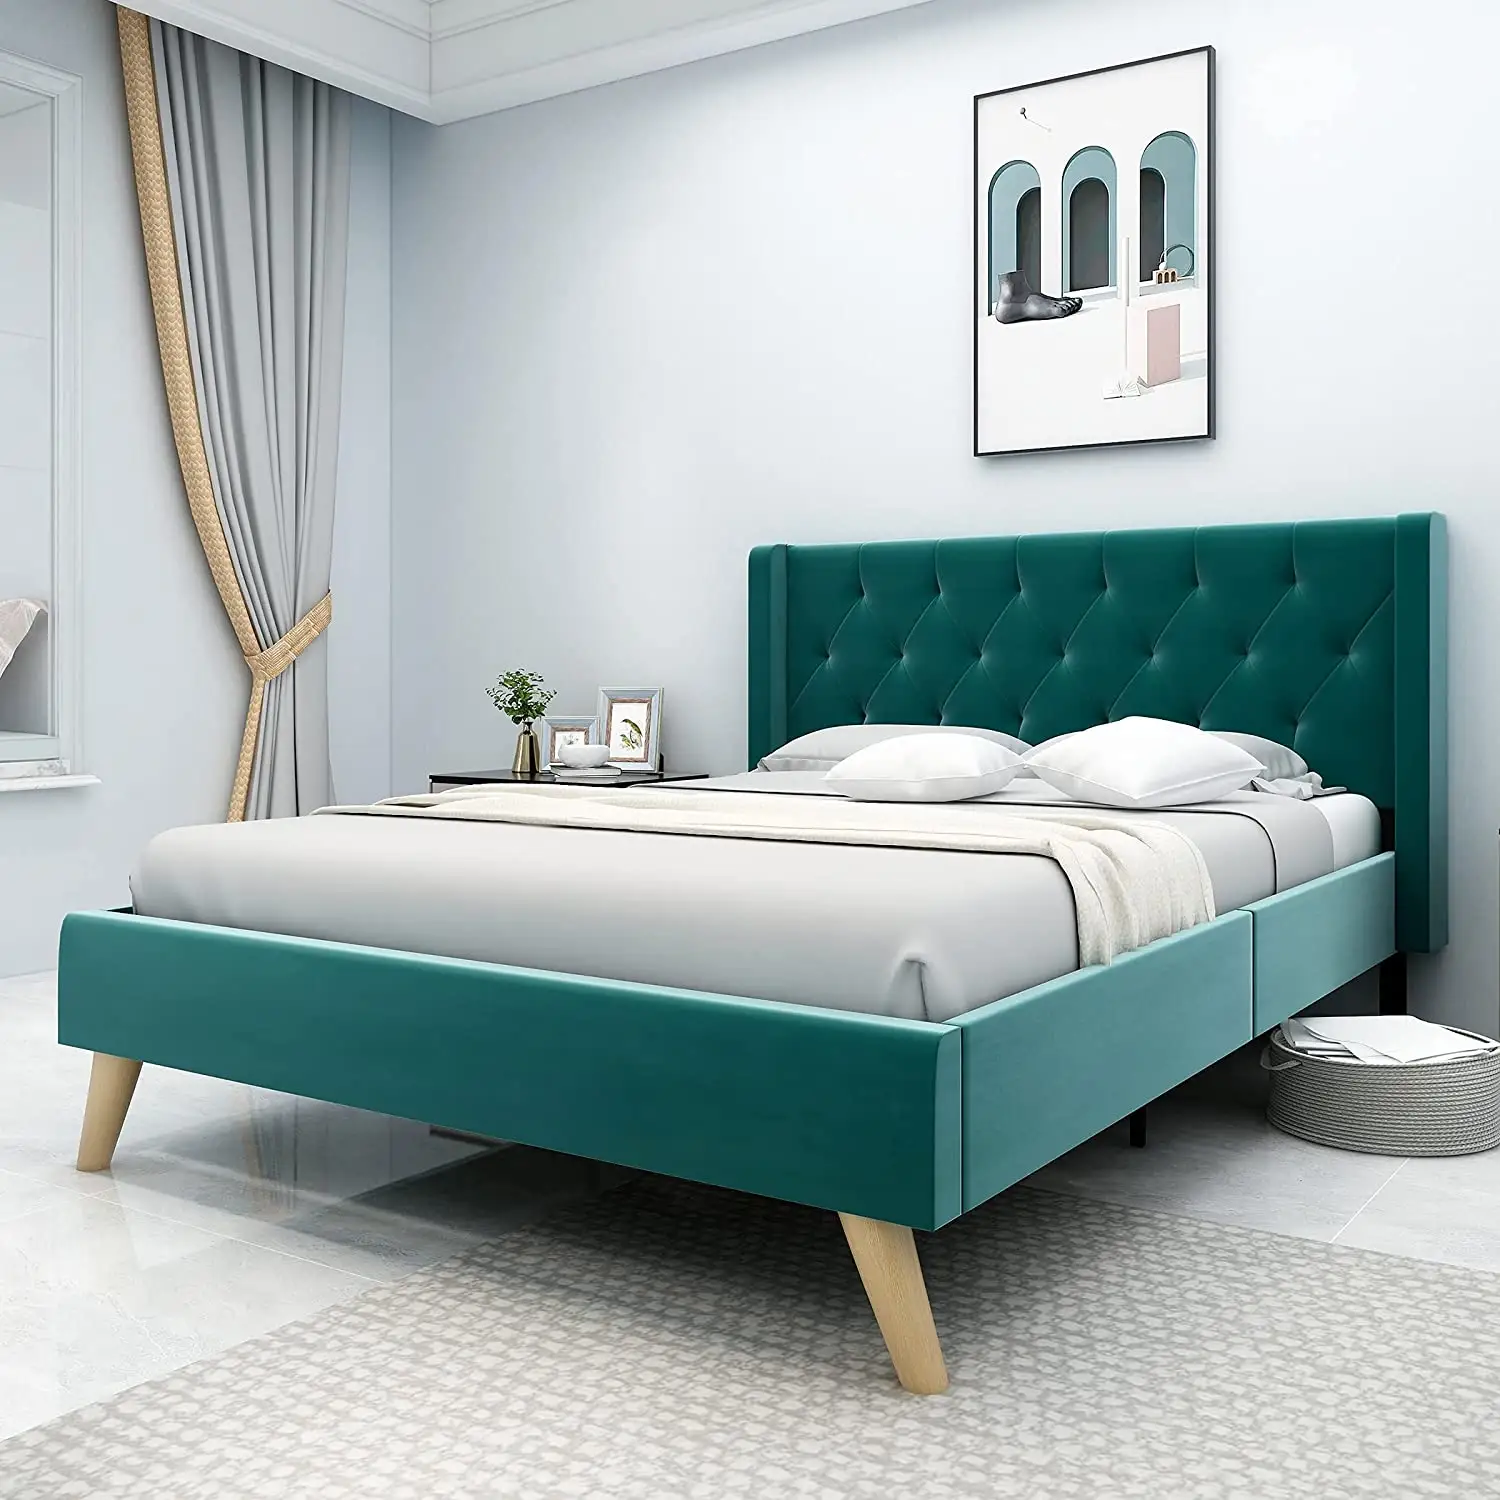 Kainice, оптовая продажа, простая установка, набор мебели для спальни, Современная регулируемая опора для кровати, рама для двуспальной кровати размера «king-size»